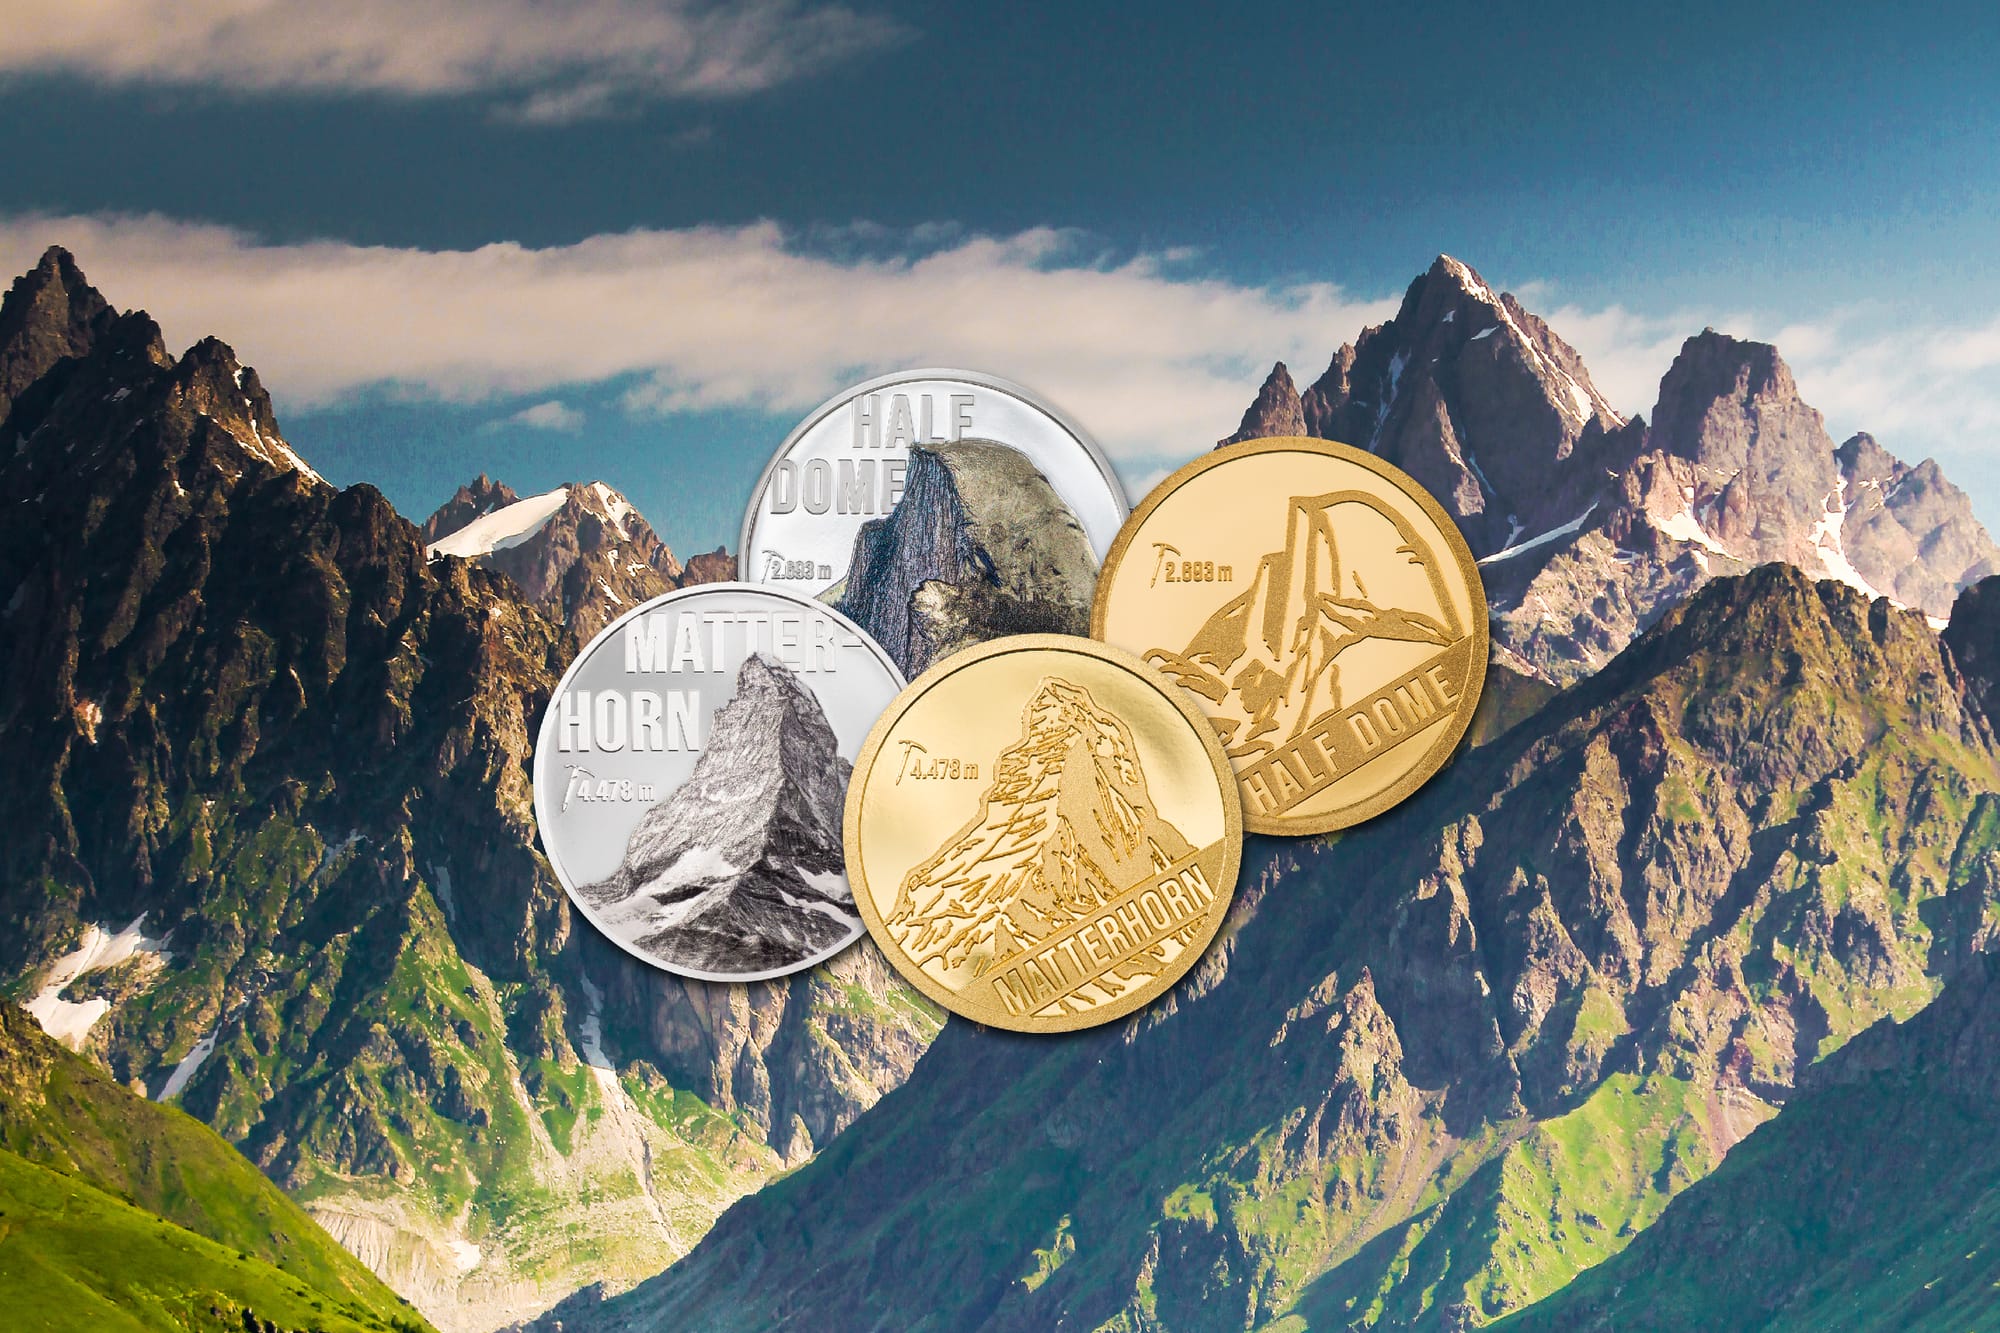 mountains silver coin collection